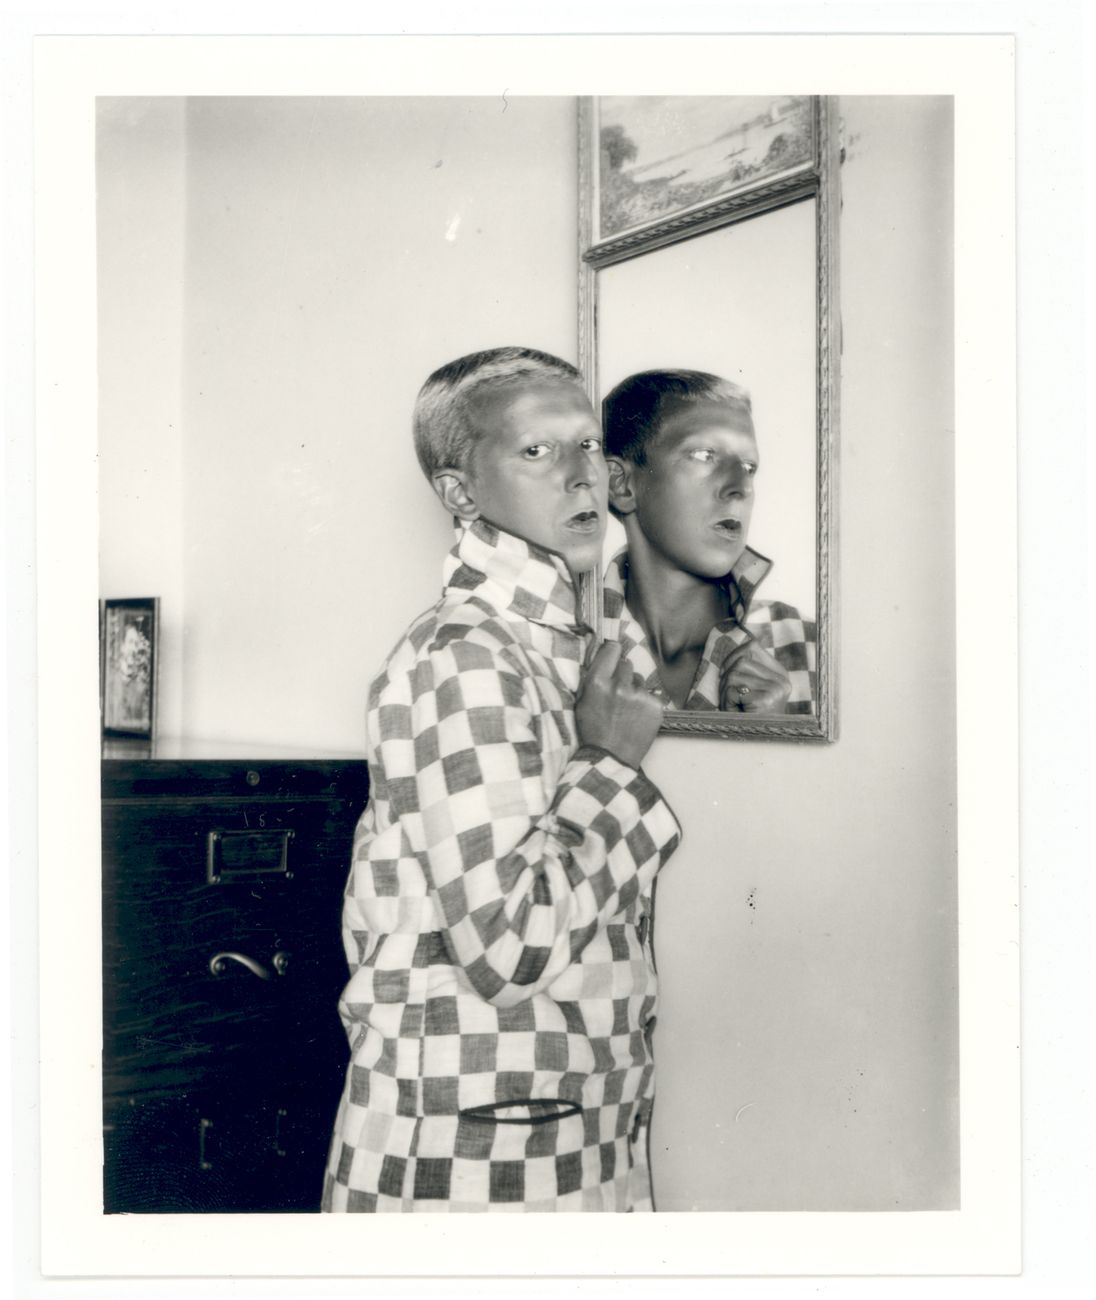 Claude Cahun, Autoritratto (imagine riflessa nello specchio, giacca a scacchi), 1928. Courtesy Jersey Heritage Collection